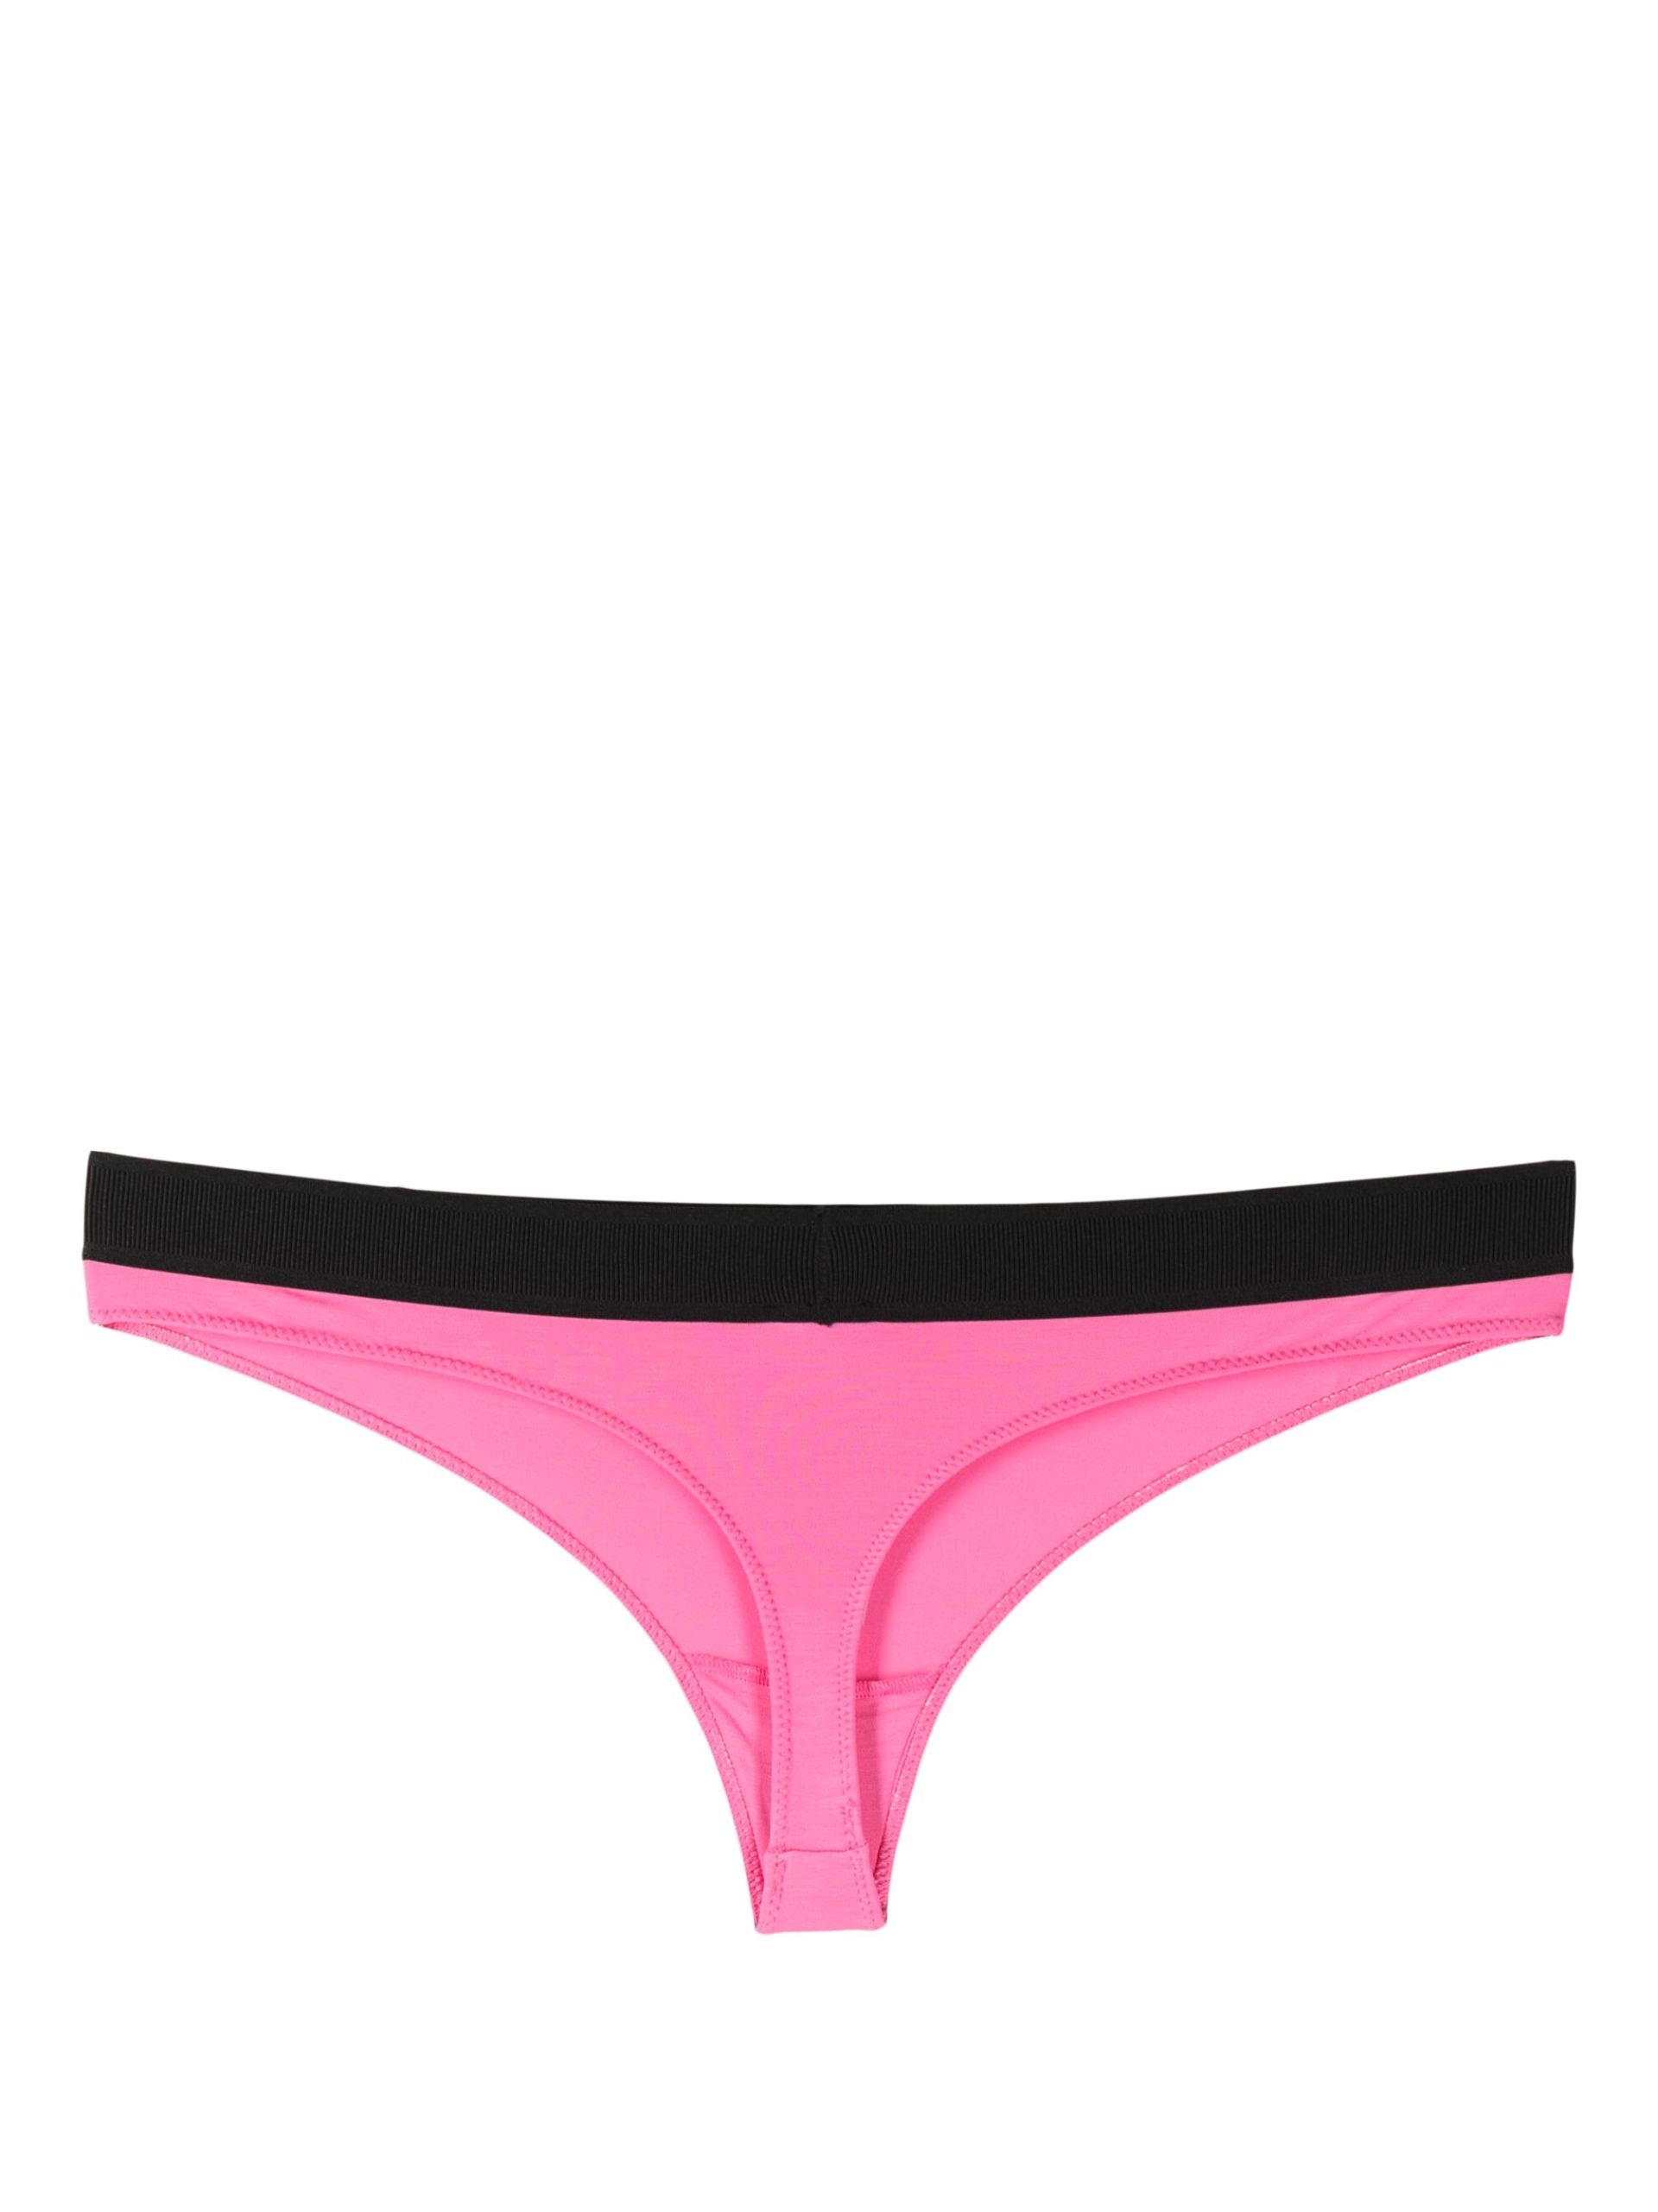 pink logo waistband modal thong - 2